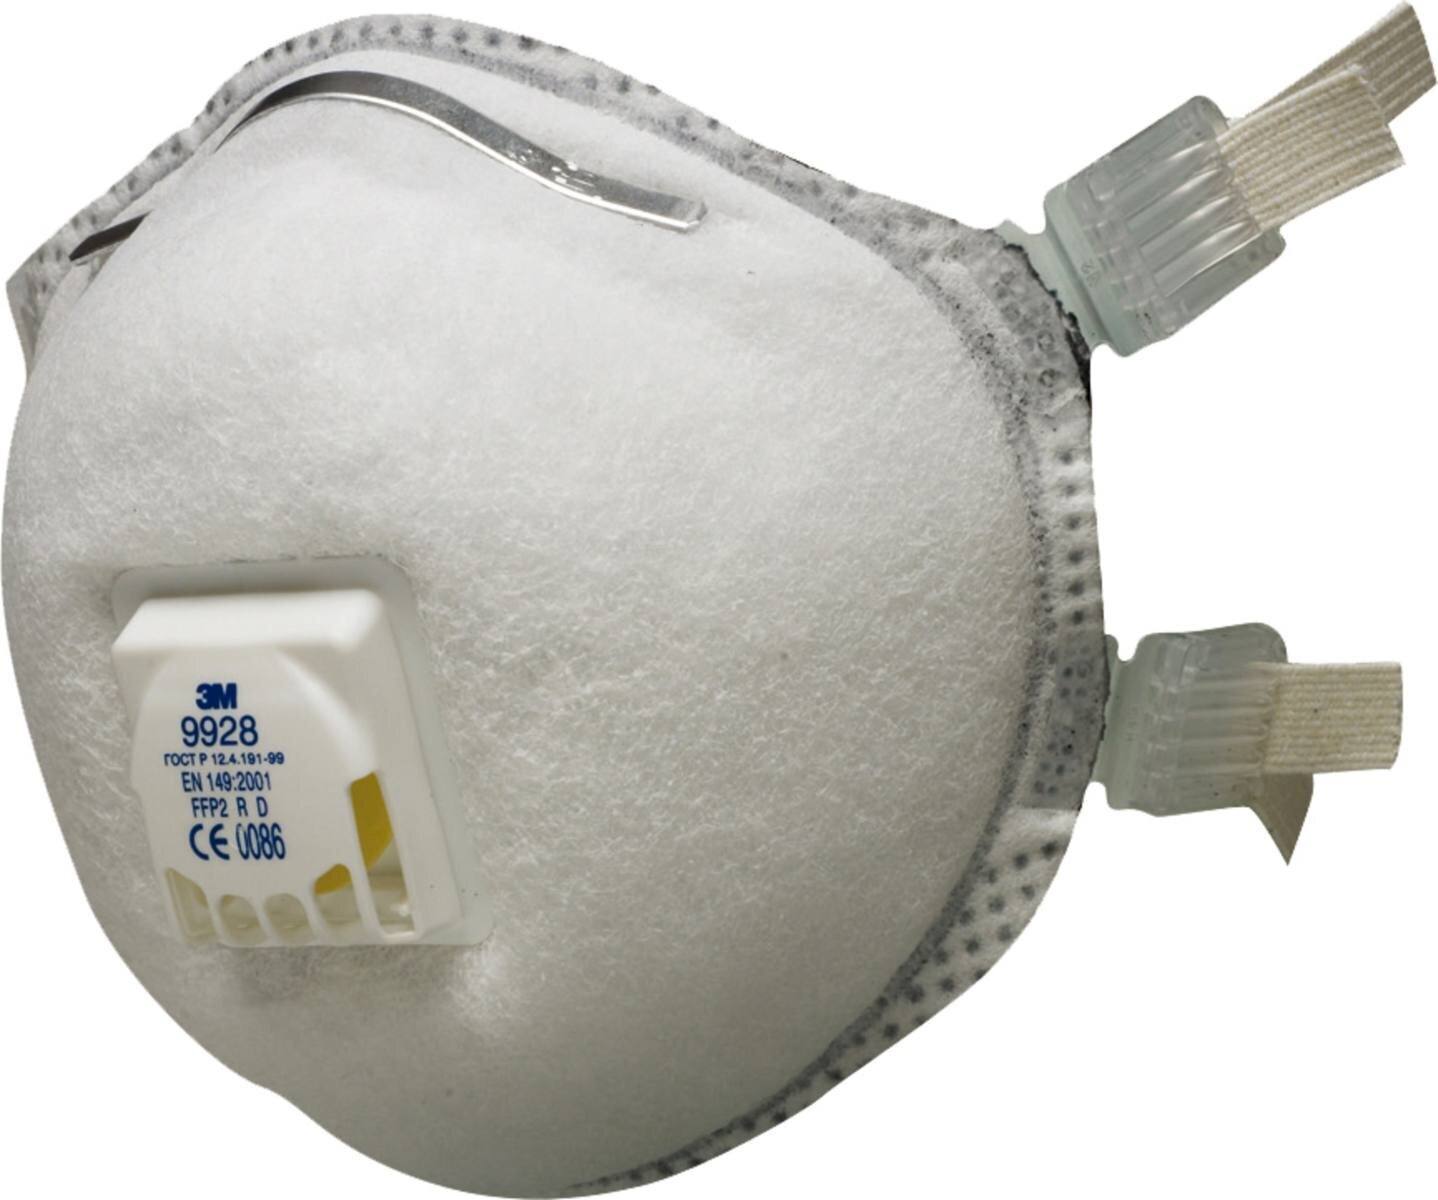 Maschera per saldatura 3M 9928 FFP2 R D con valvola di espirazione a flusso freddo contro le particelle fino a 10 volte il valore limite e contro l'ozono. Ideale per la saldatura!